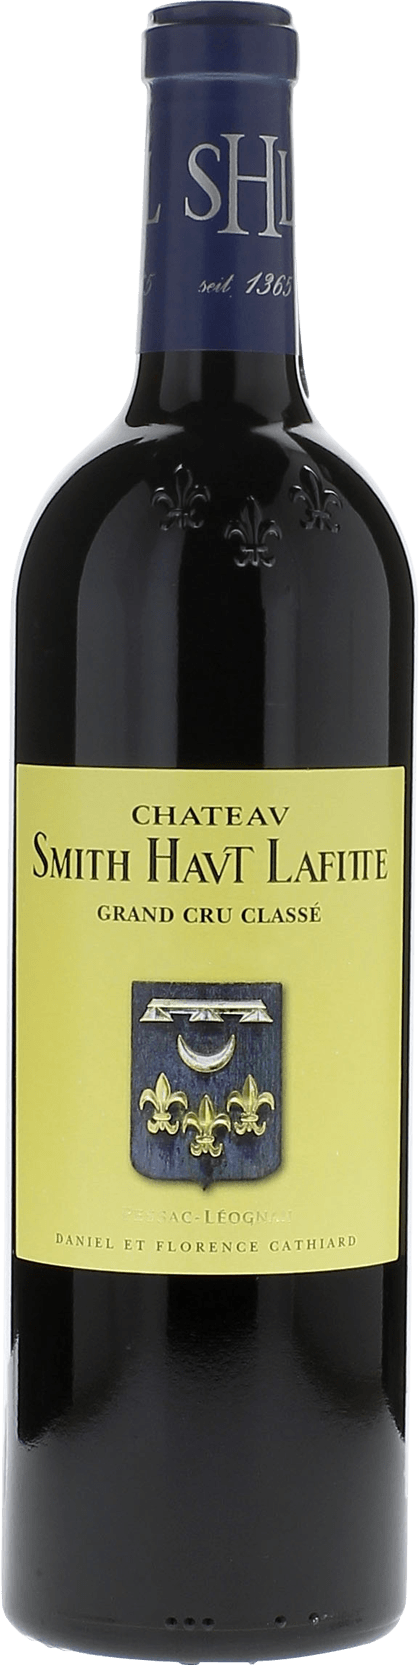 Smith haut lafitte 2008 Grand Cru Class Graves, Bordeaux rouge